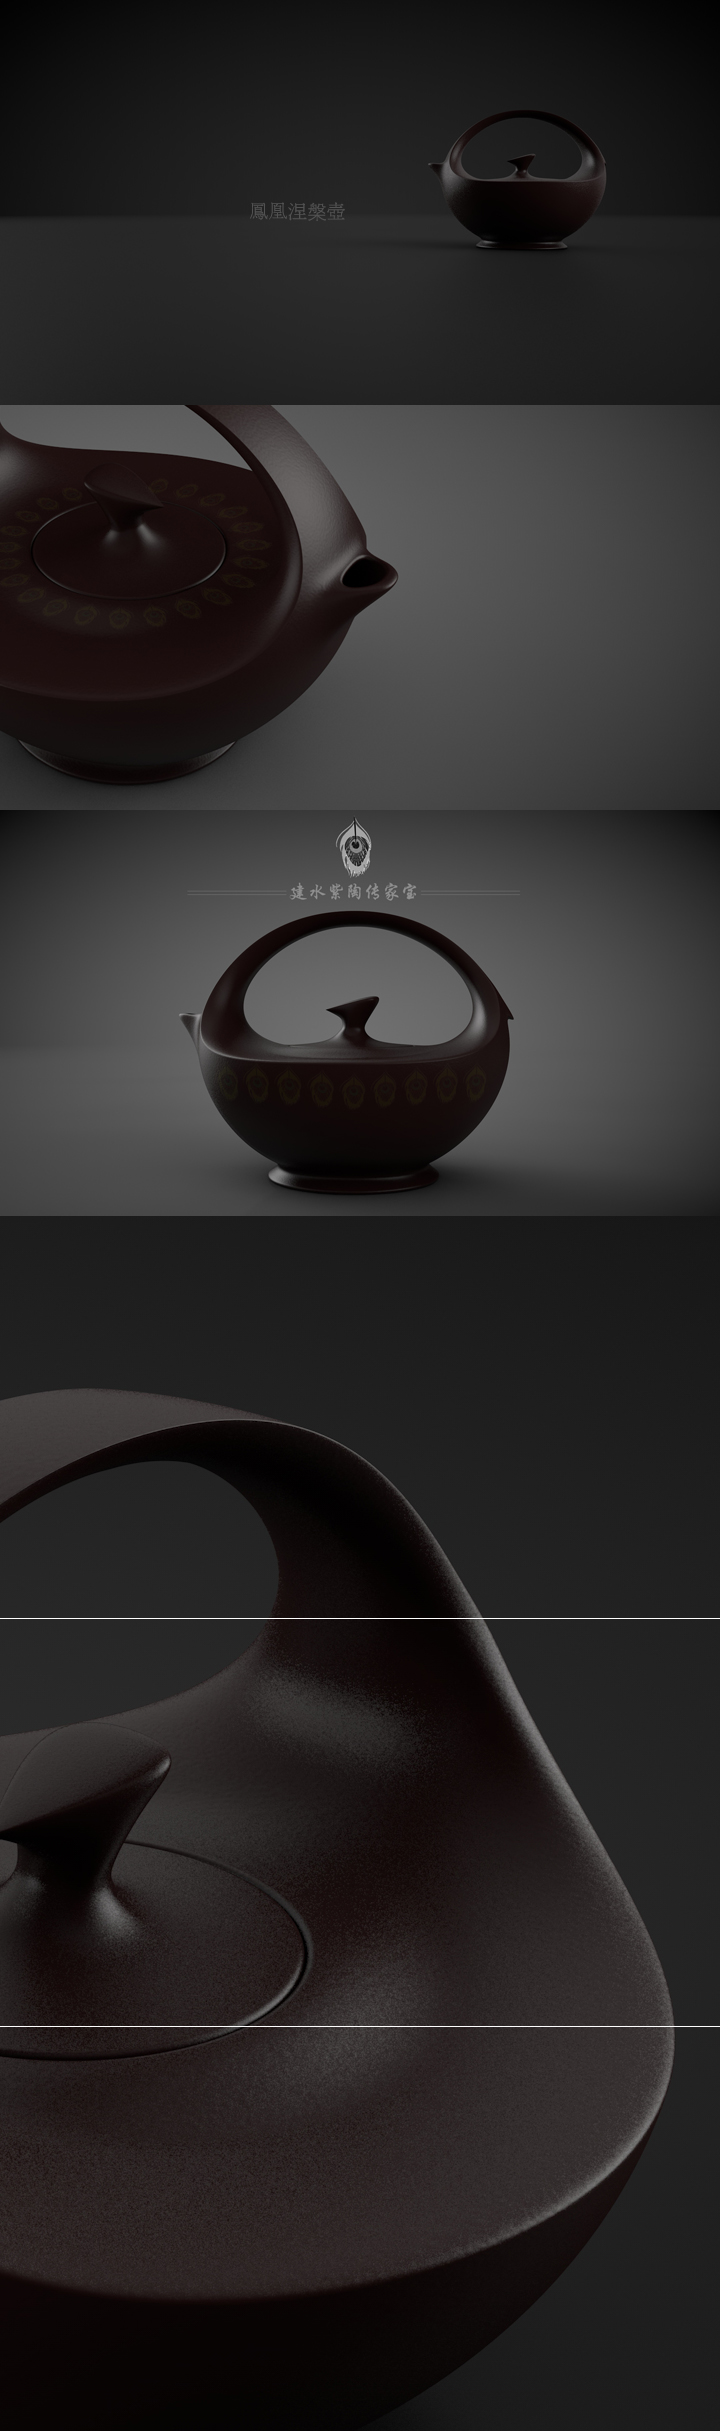 以鳳凰圖騰為原型設計的鳳凰涅槃茶壺